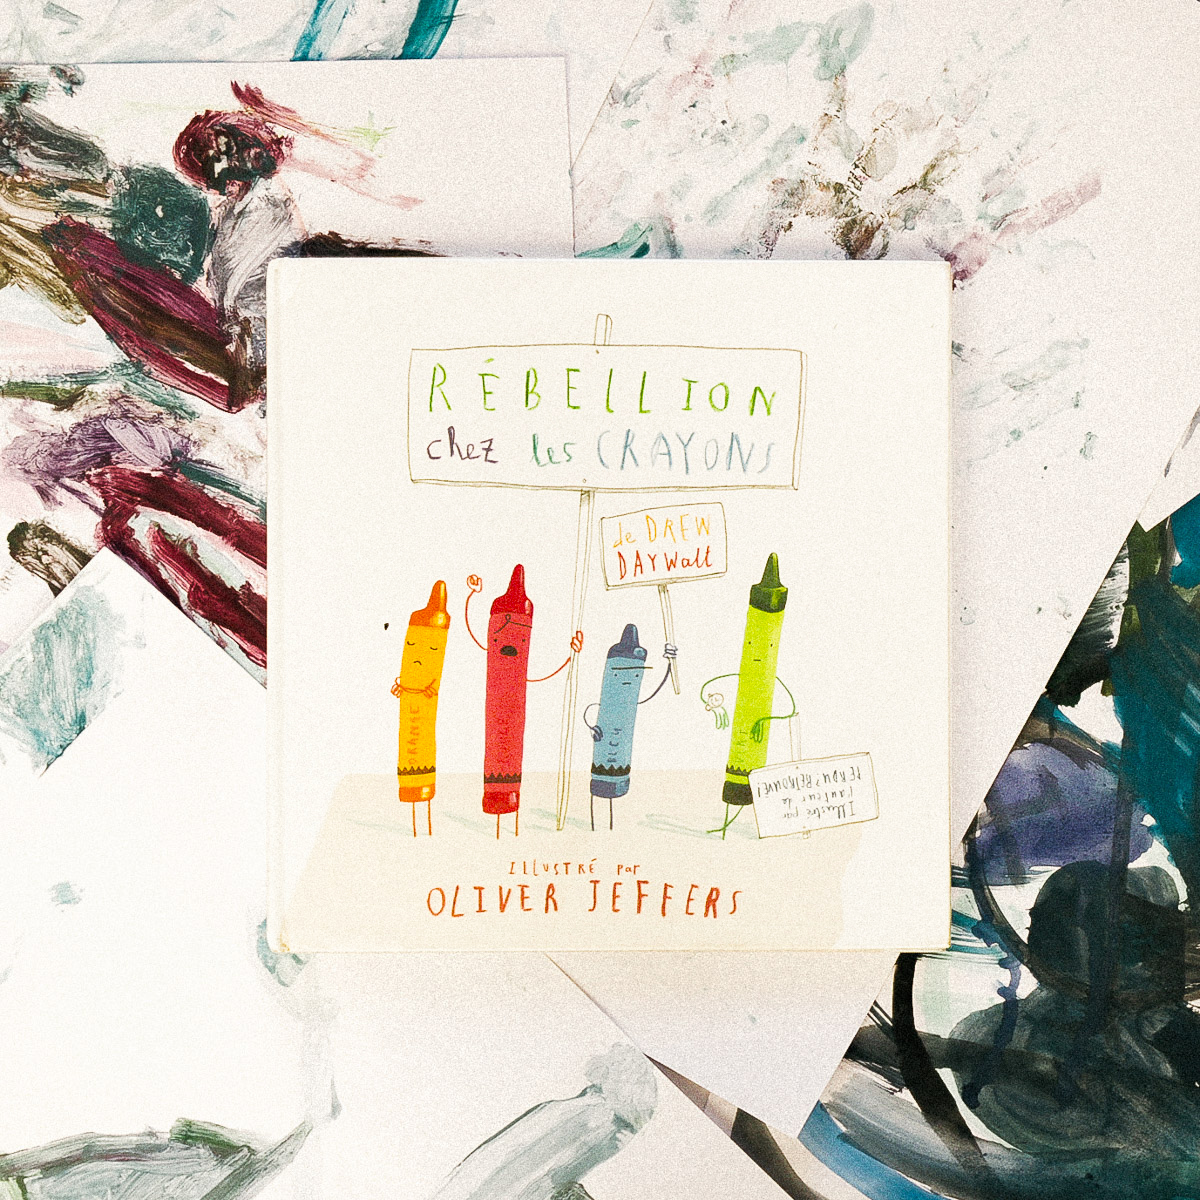 🖍 Rébellion chez les crayons de Drew Daywatt, illustré par Oliver Jeffers